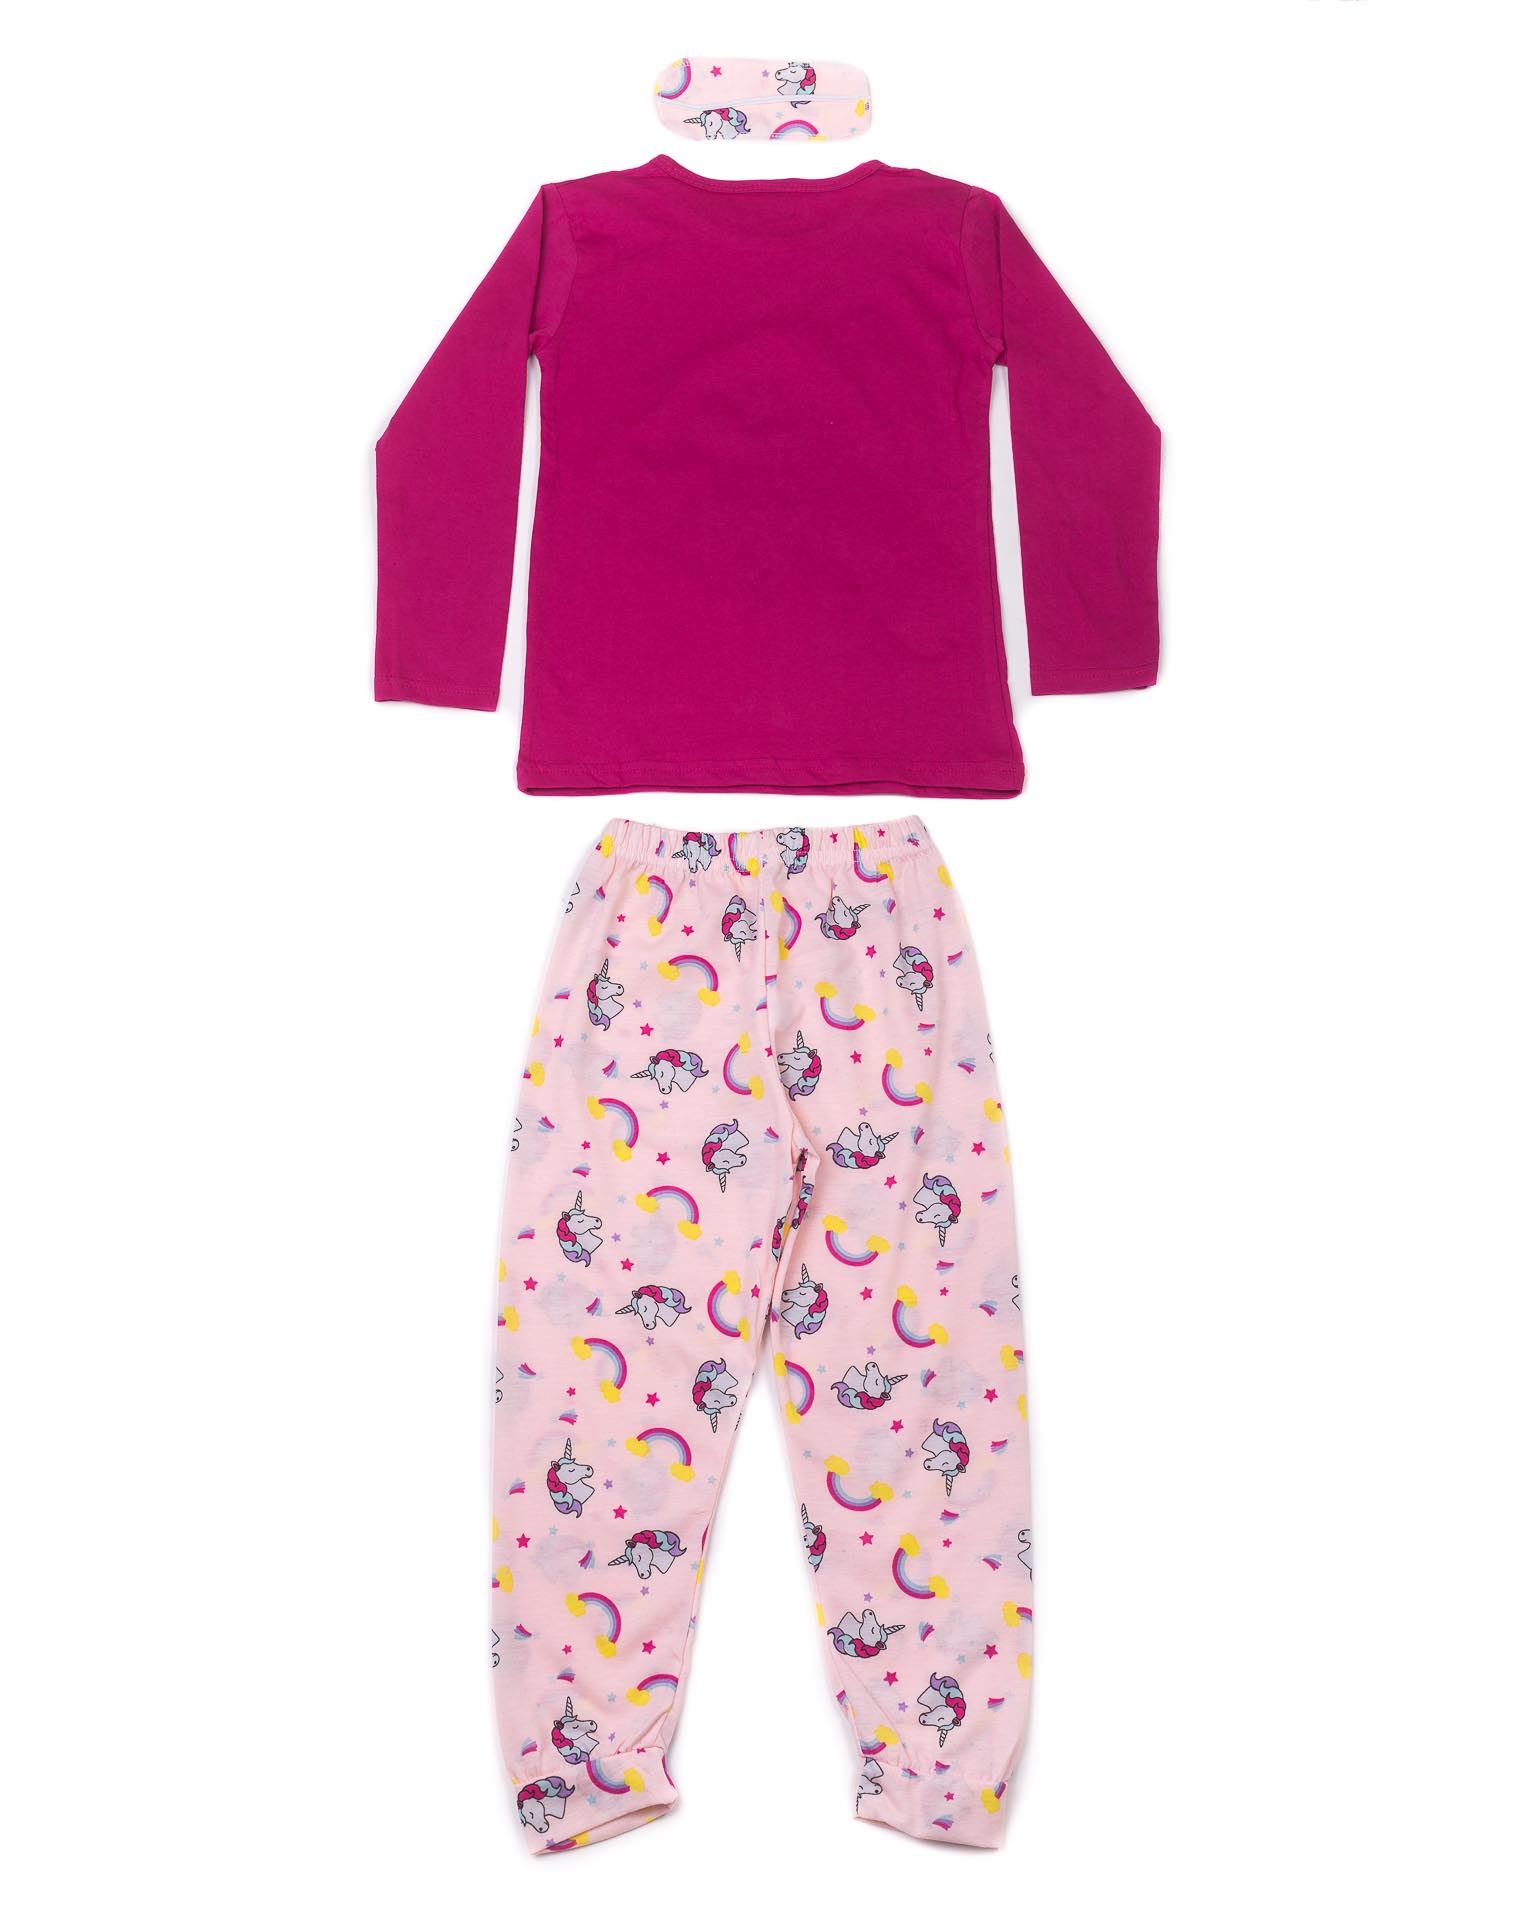 Піжама для дівчинки Mini moon 6061 єдиноріг рожева 9009-1